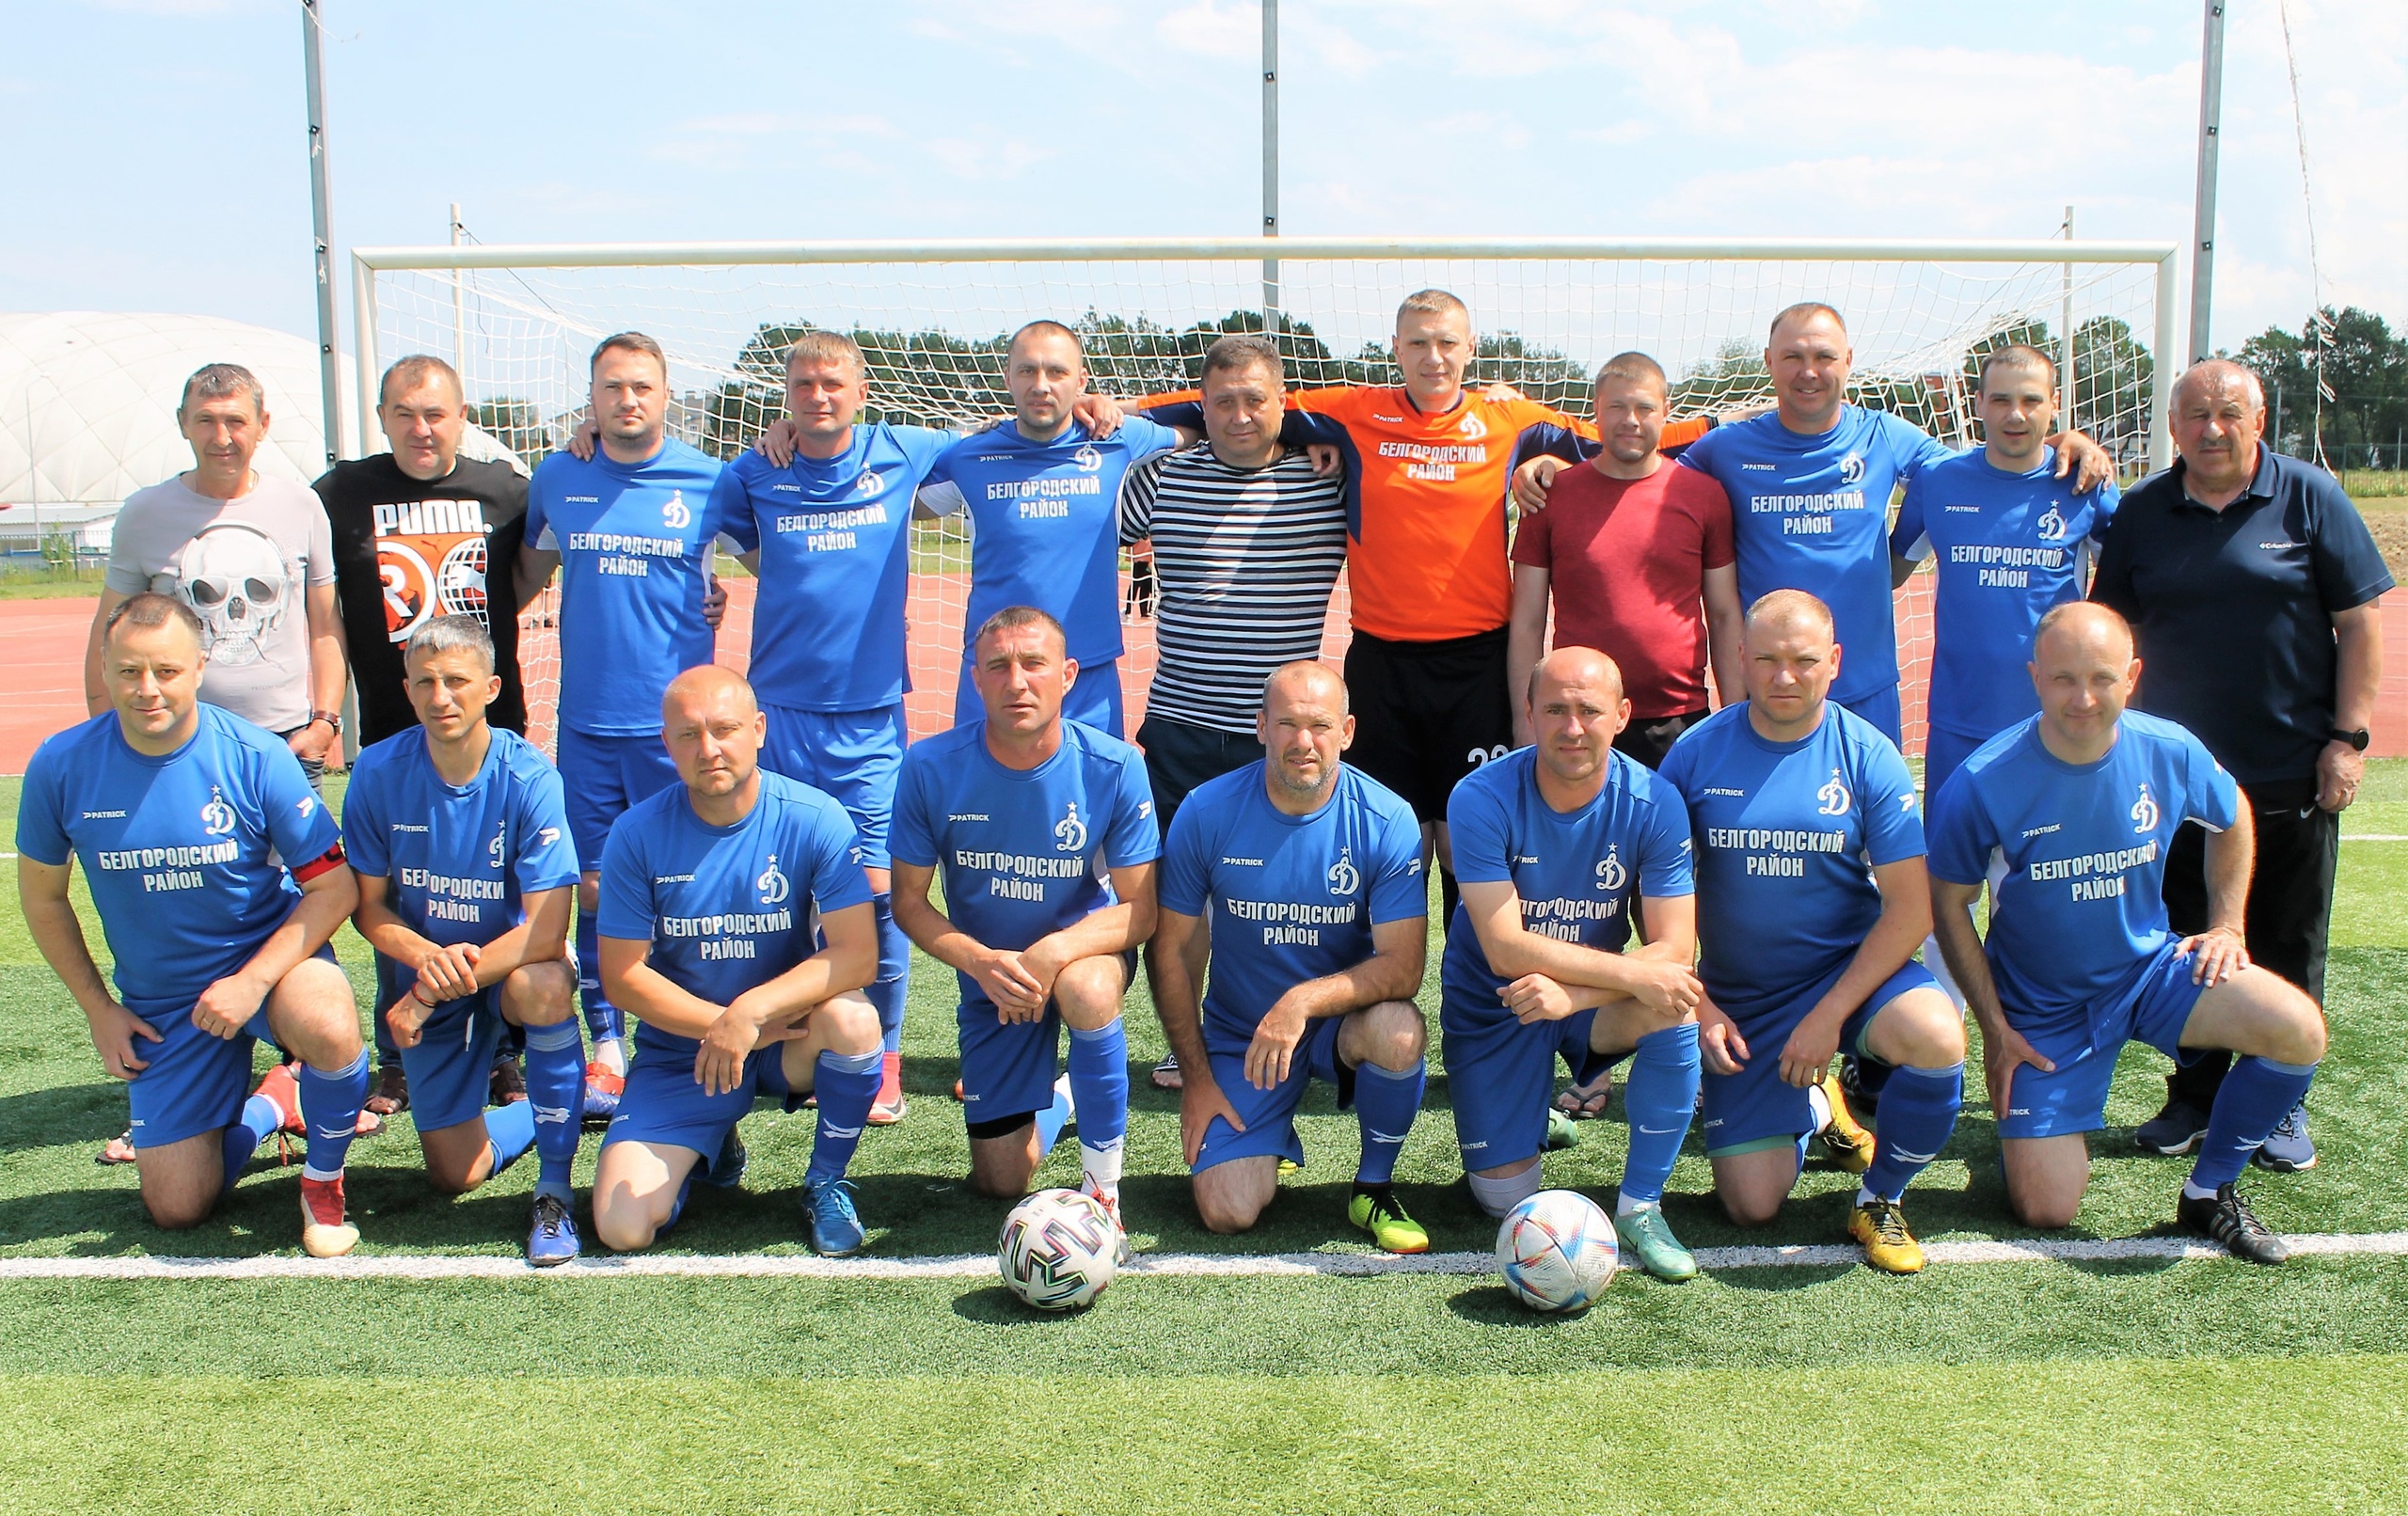 Спортсмены Белгородского района – победители областного Первенства по футболу среди ветеранов старше 40 лет.